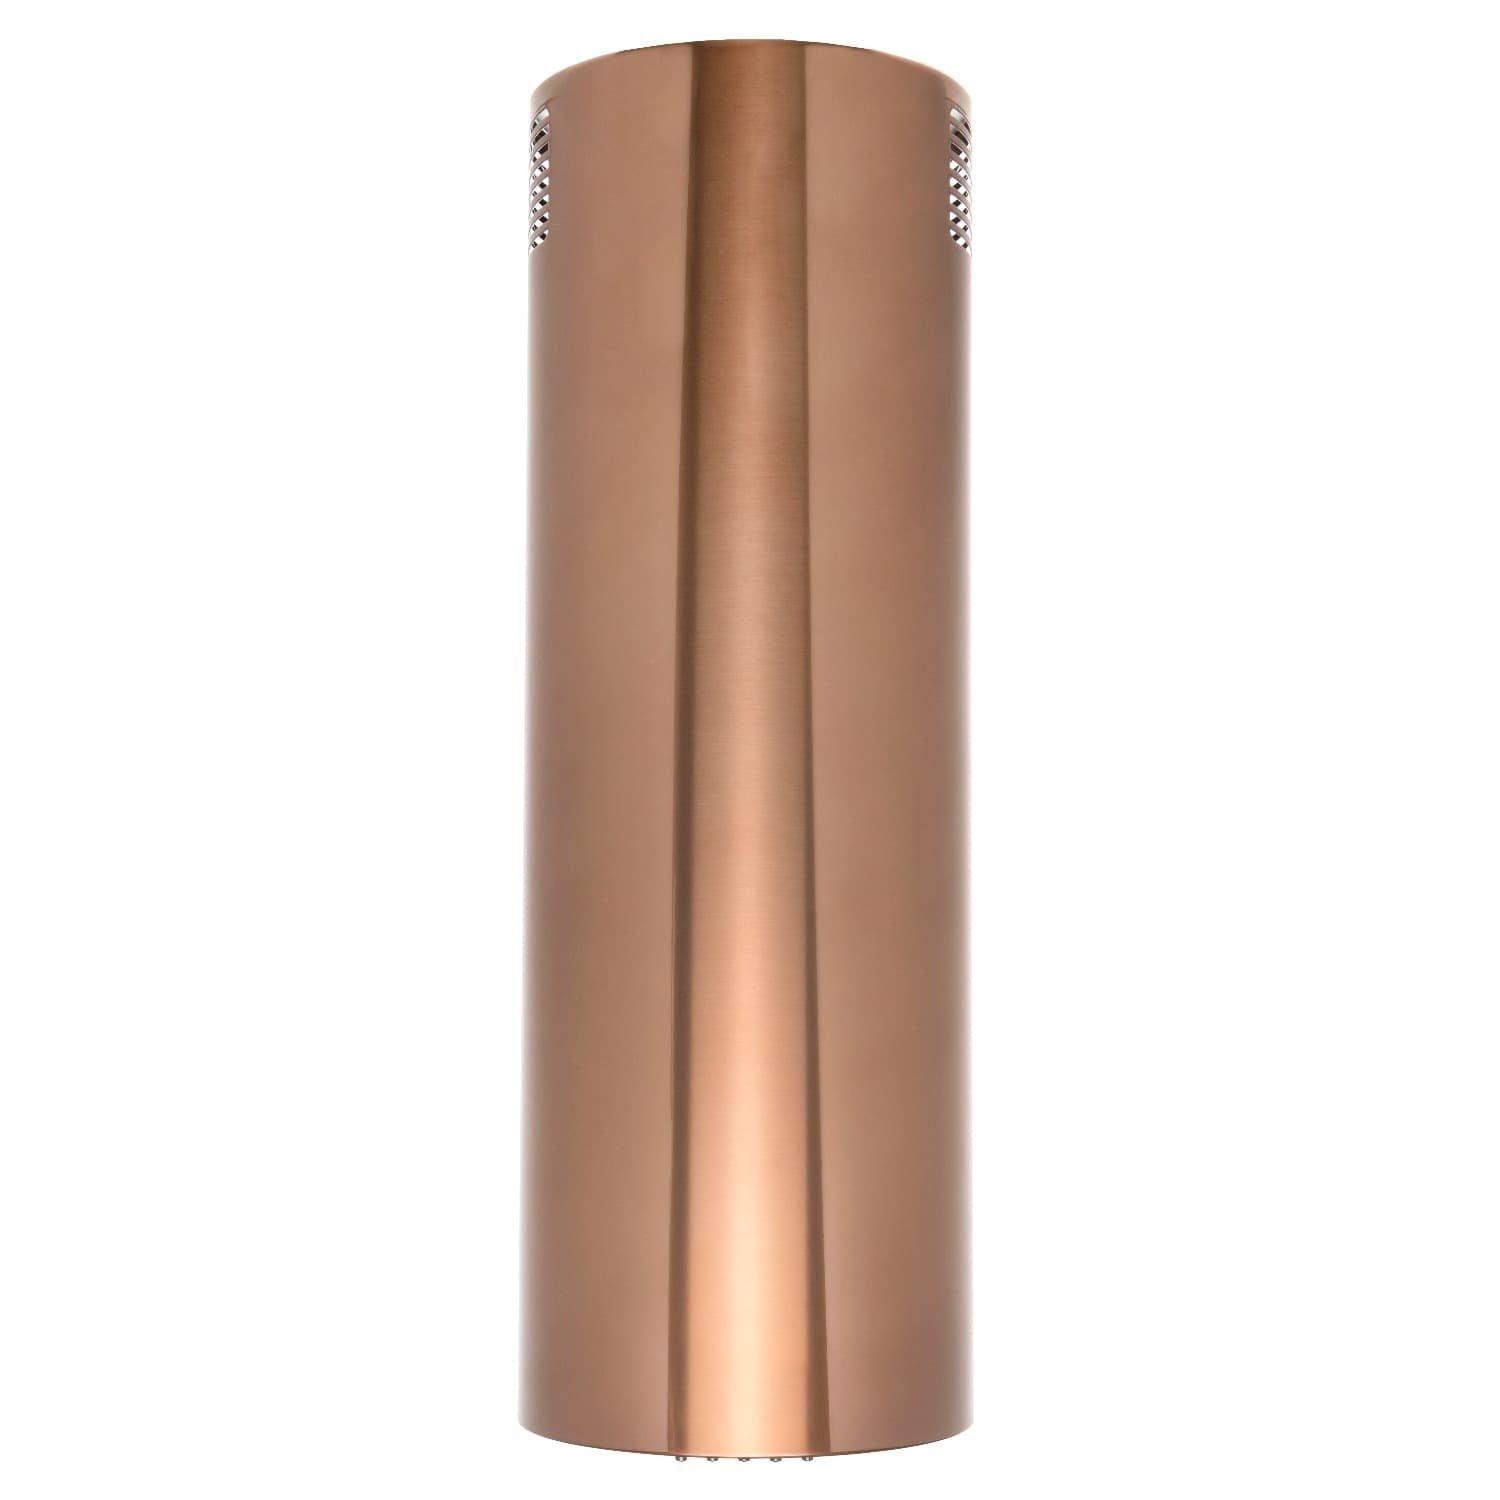 Вытяжка настенная Konigin Beauty Copper 31 коричневая вытяжка настенная konigin beauty золотистая